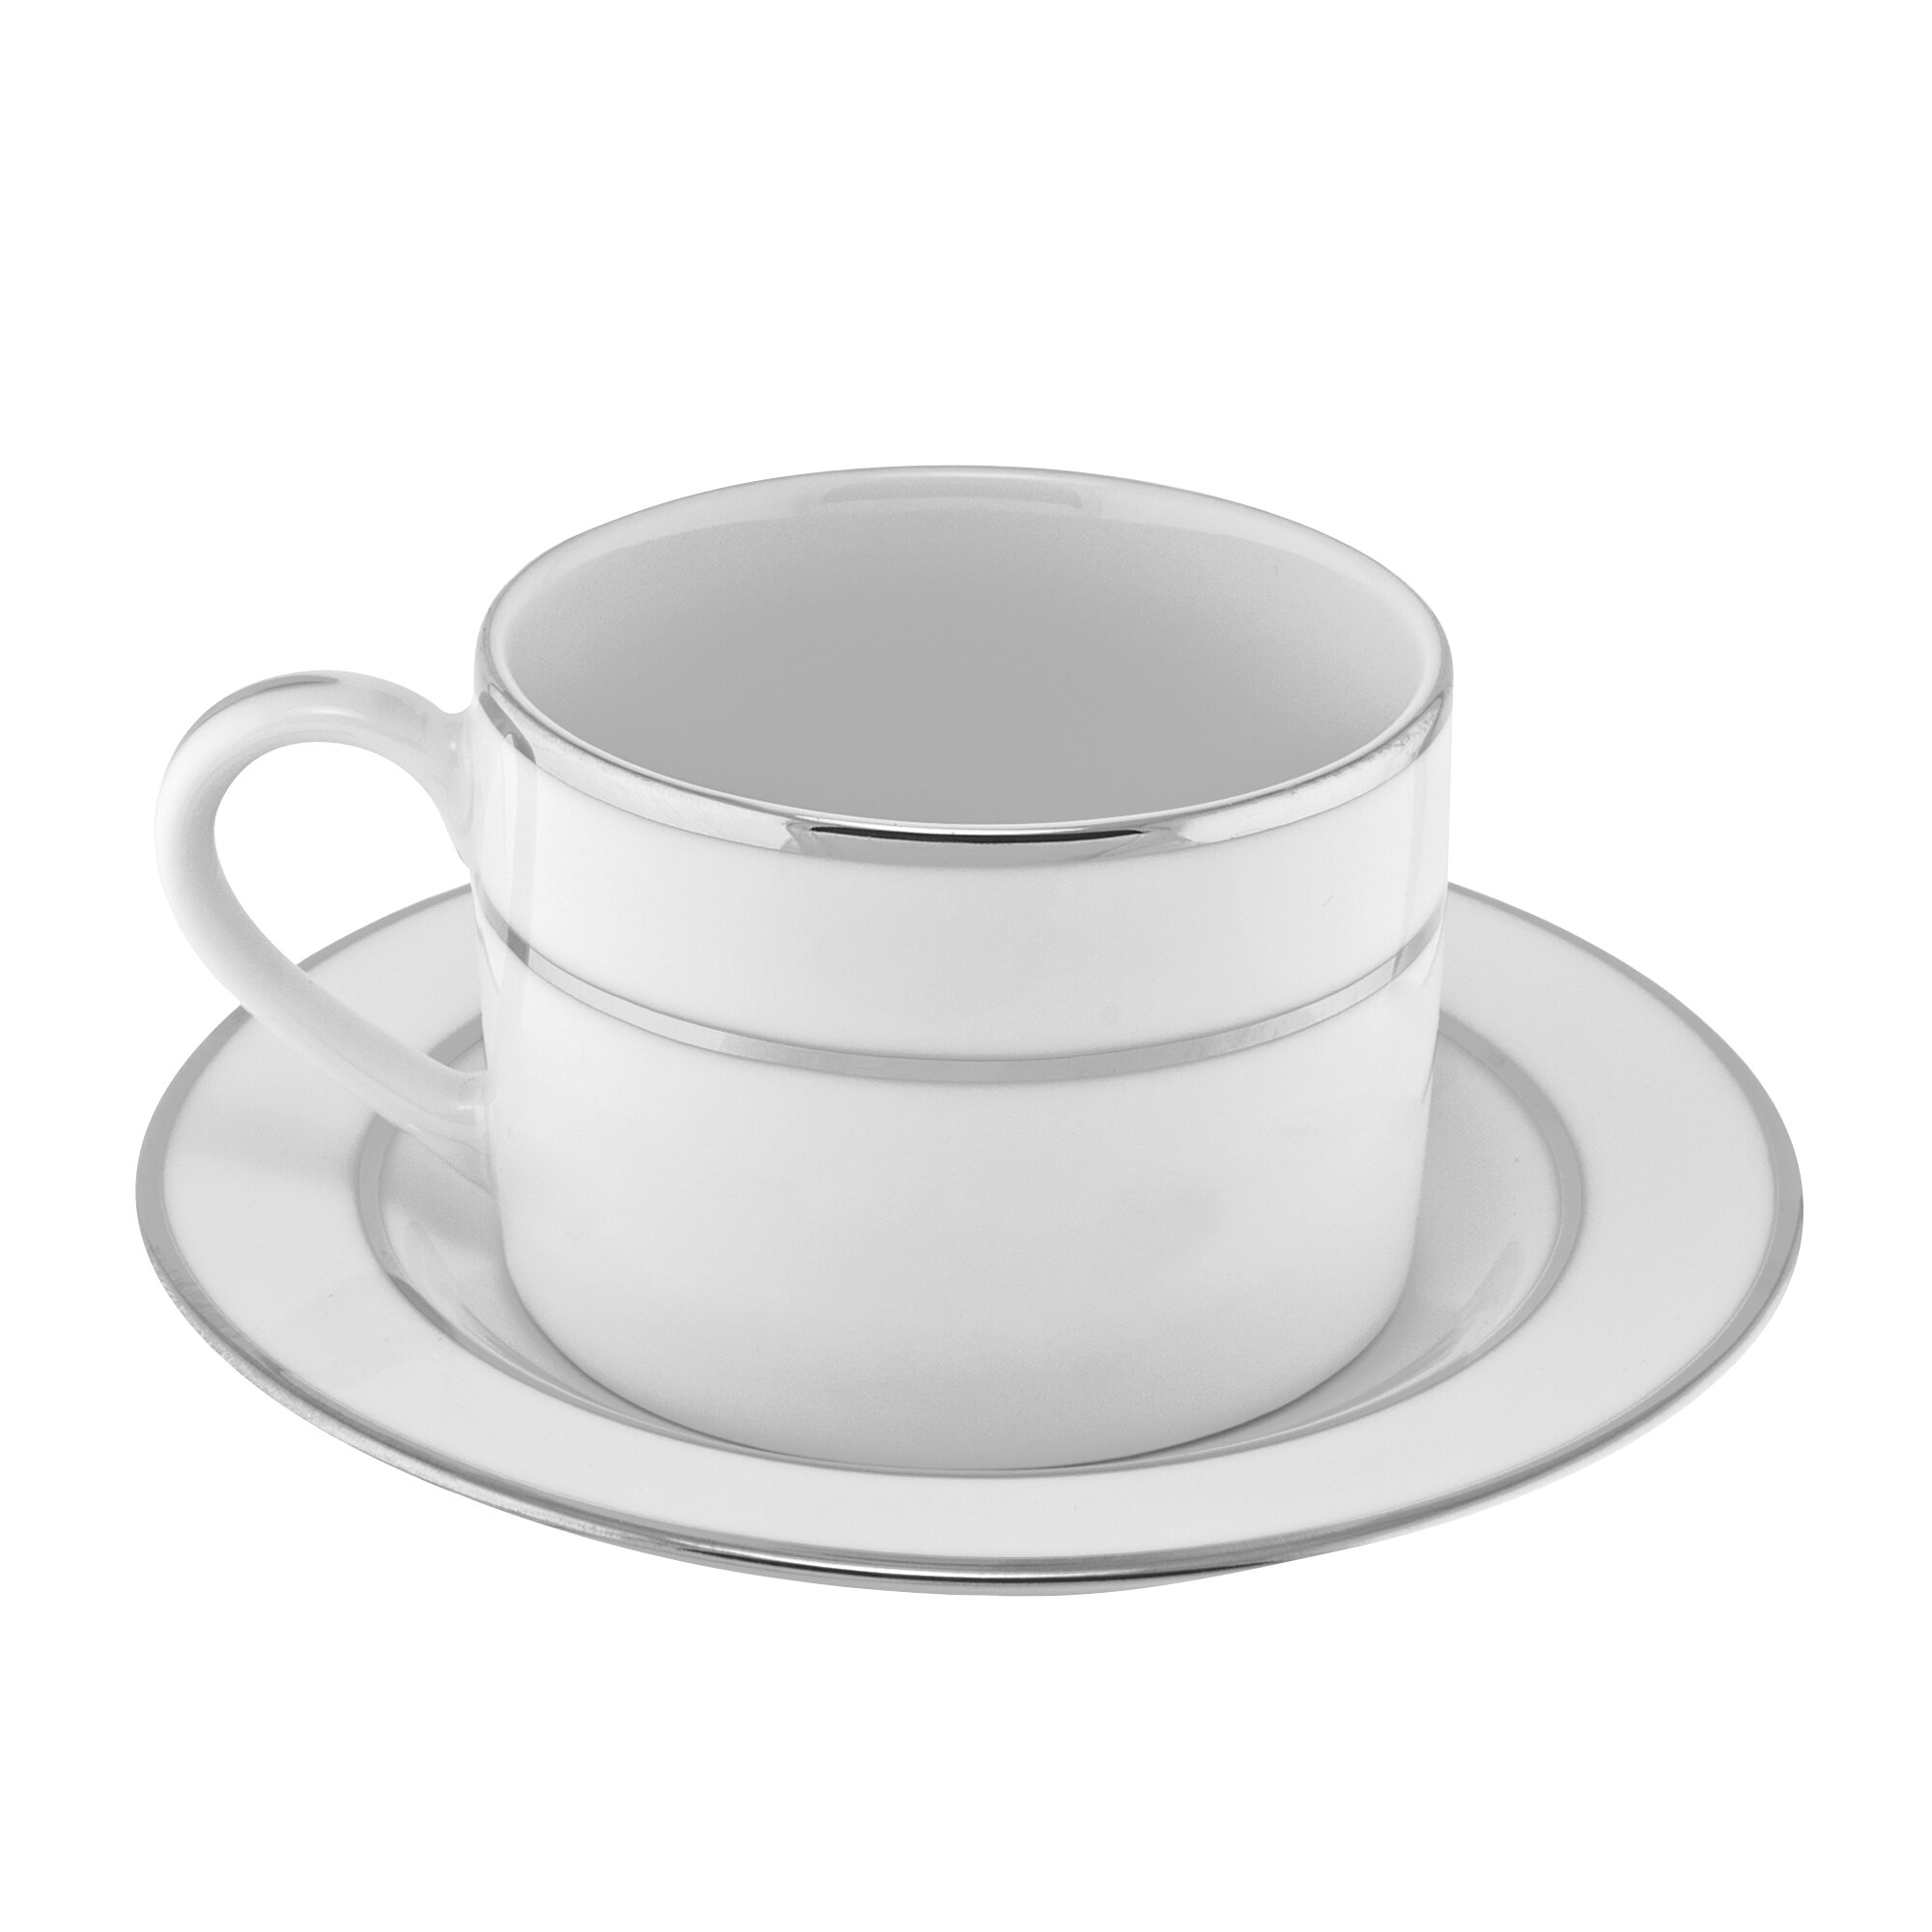 Verge 4-Oz. Espresso Cups and Saucers, Set of 8 + Reviews